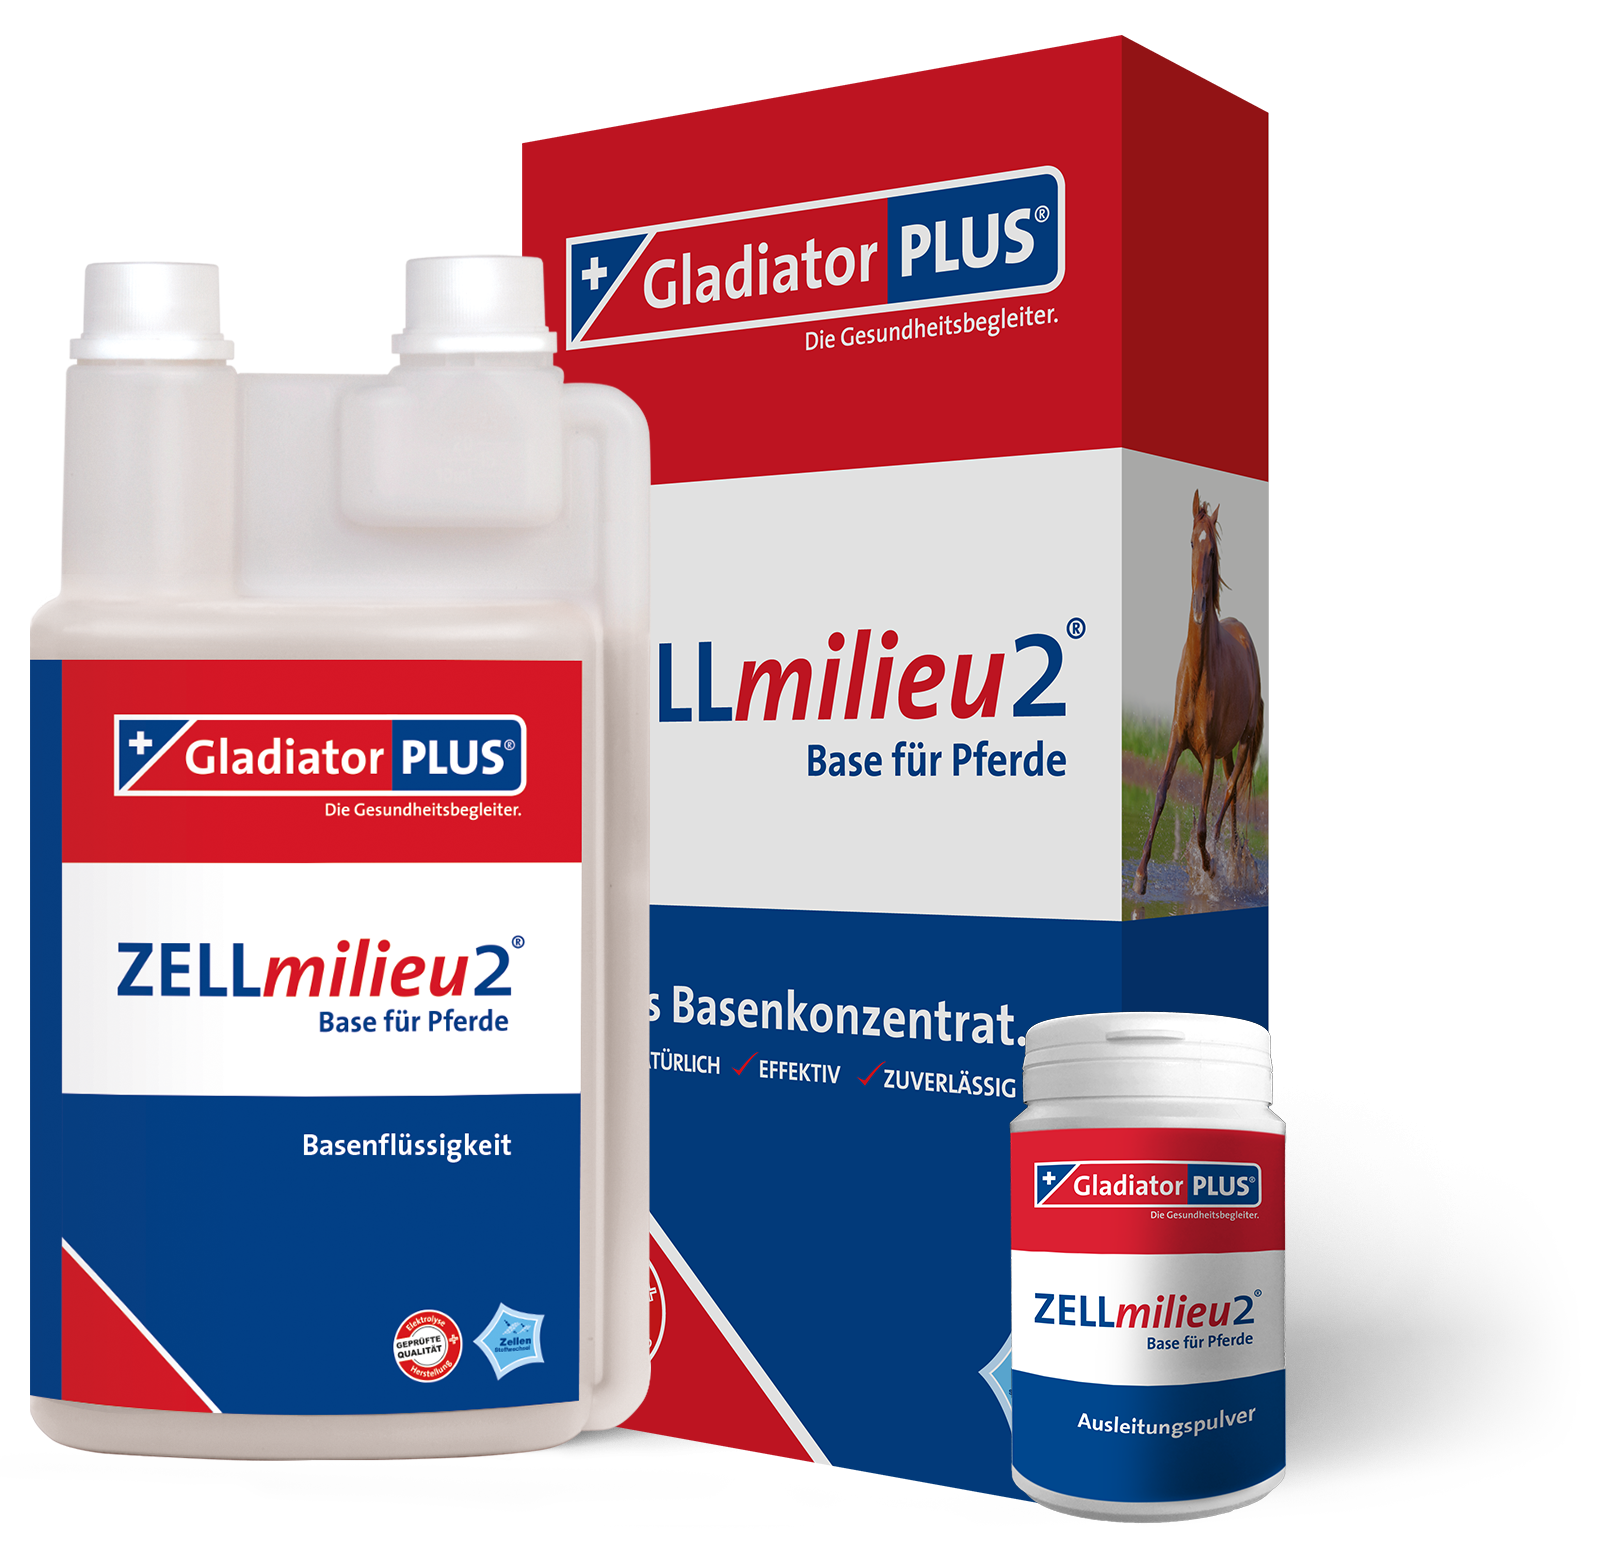 GladiatorPLUS - ZELLmilieu2 Base + Pulver für Pferde - Basenkonzentratsergänzung zu Gladiator PLUS